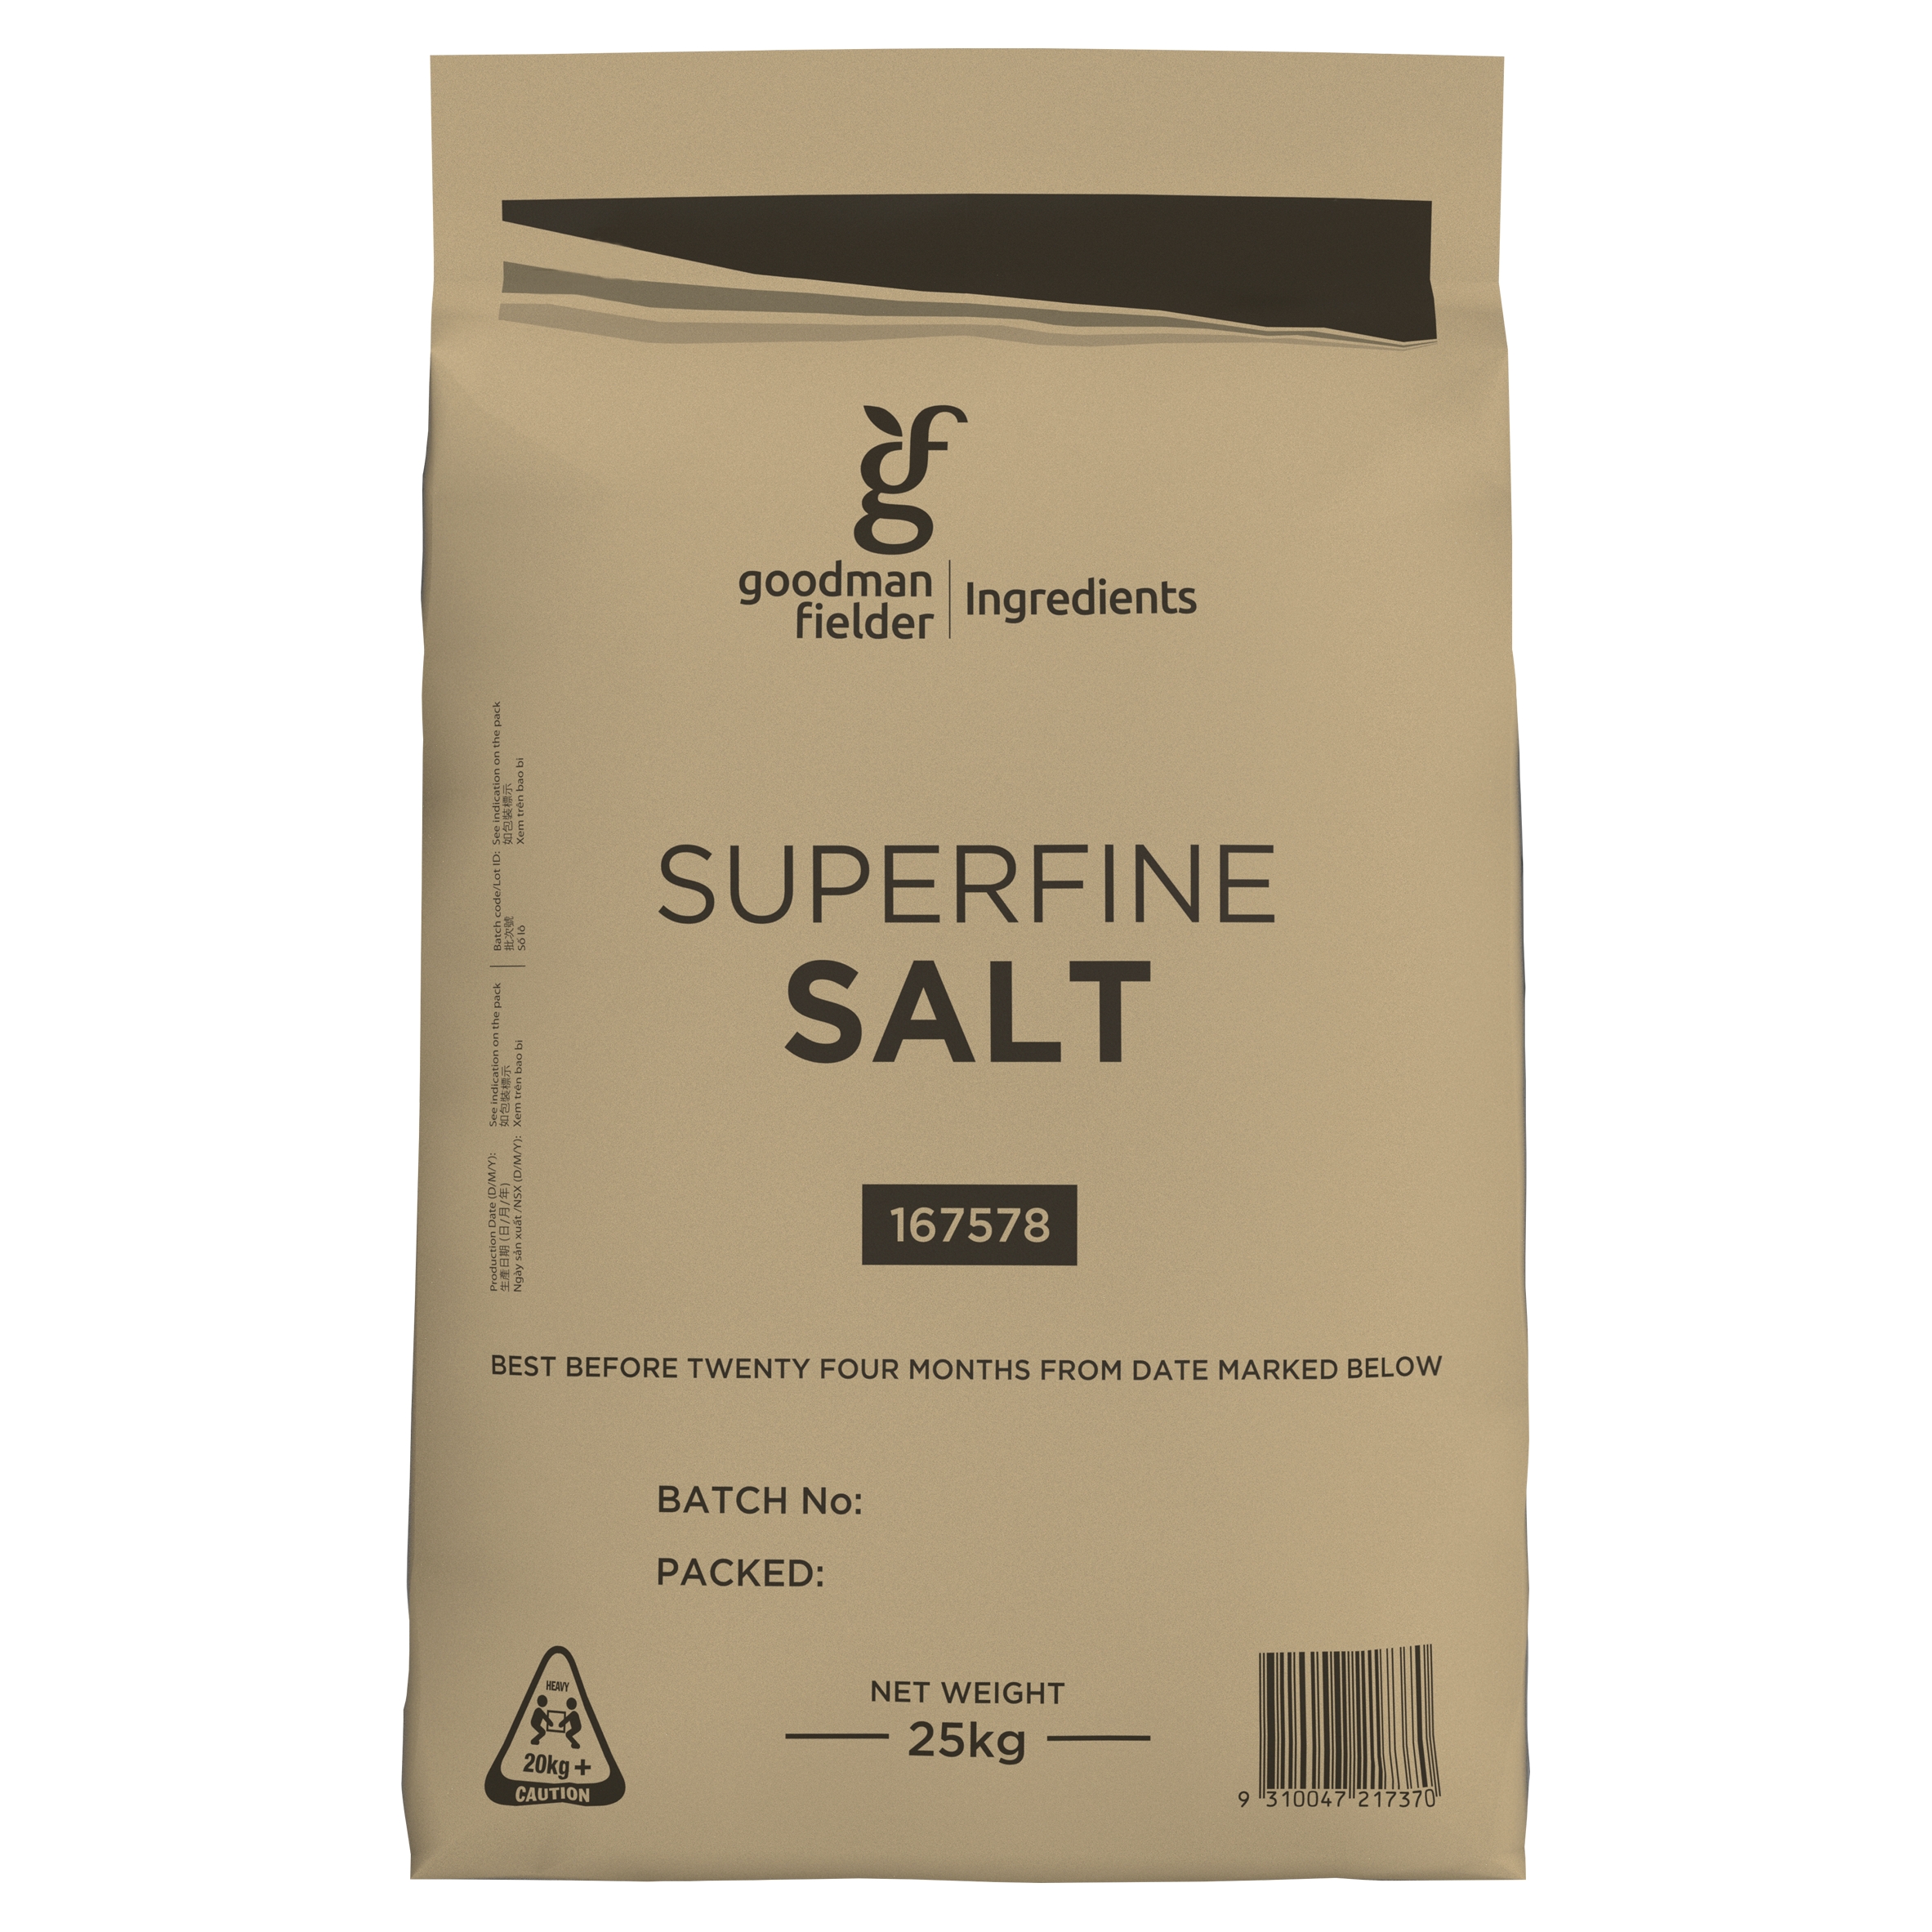 Goodman Fielder Ingredients Superfine Salt 25kg product photo